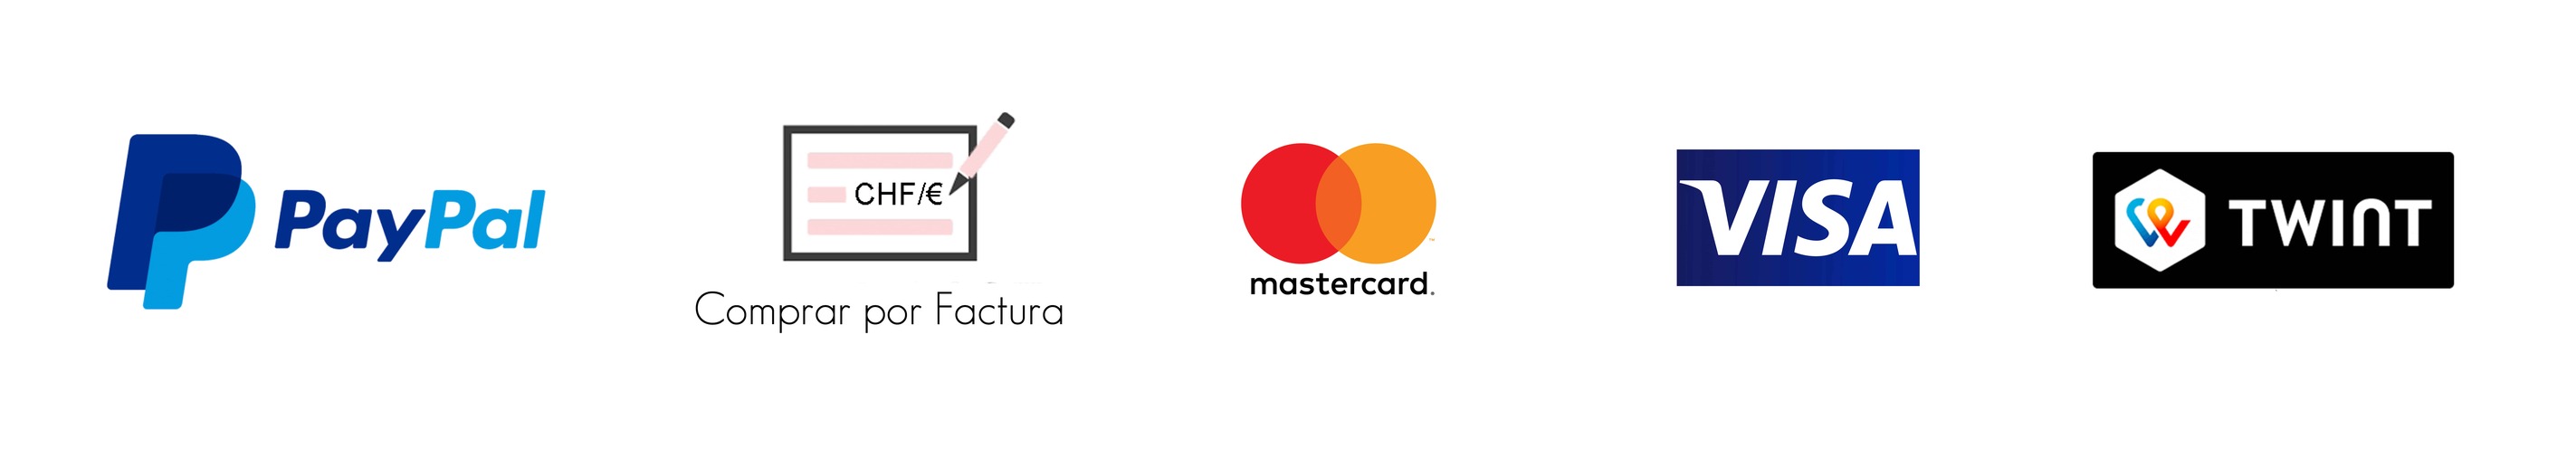 Formas de pago PayPal Compra a cuenta Mastercard Visa Twint